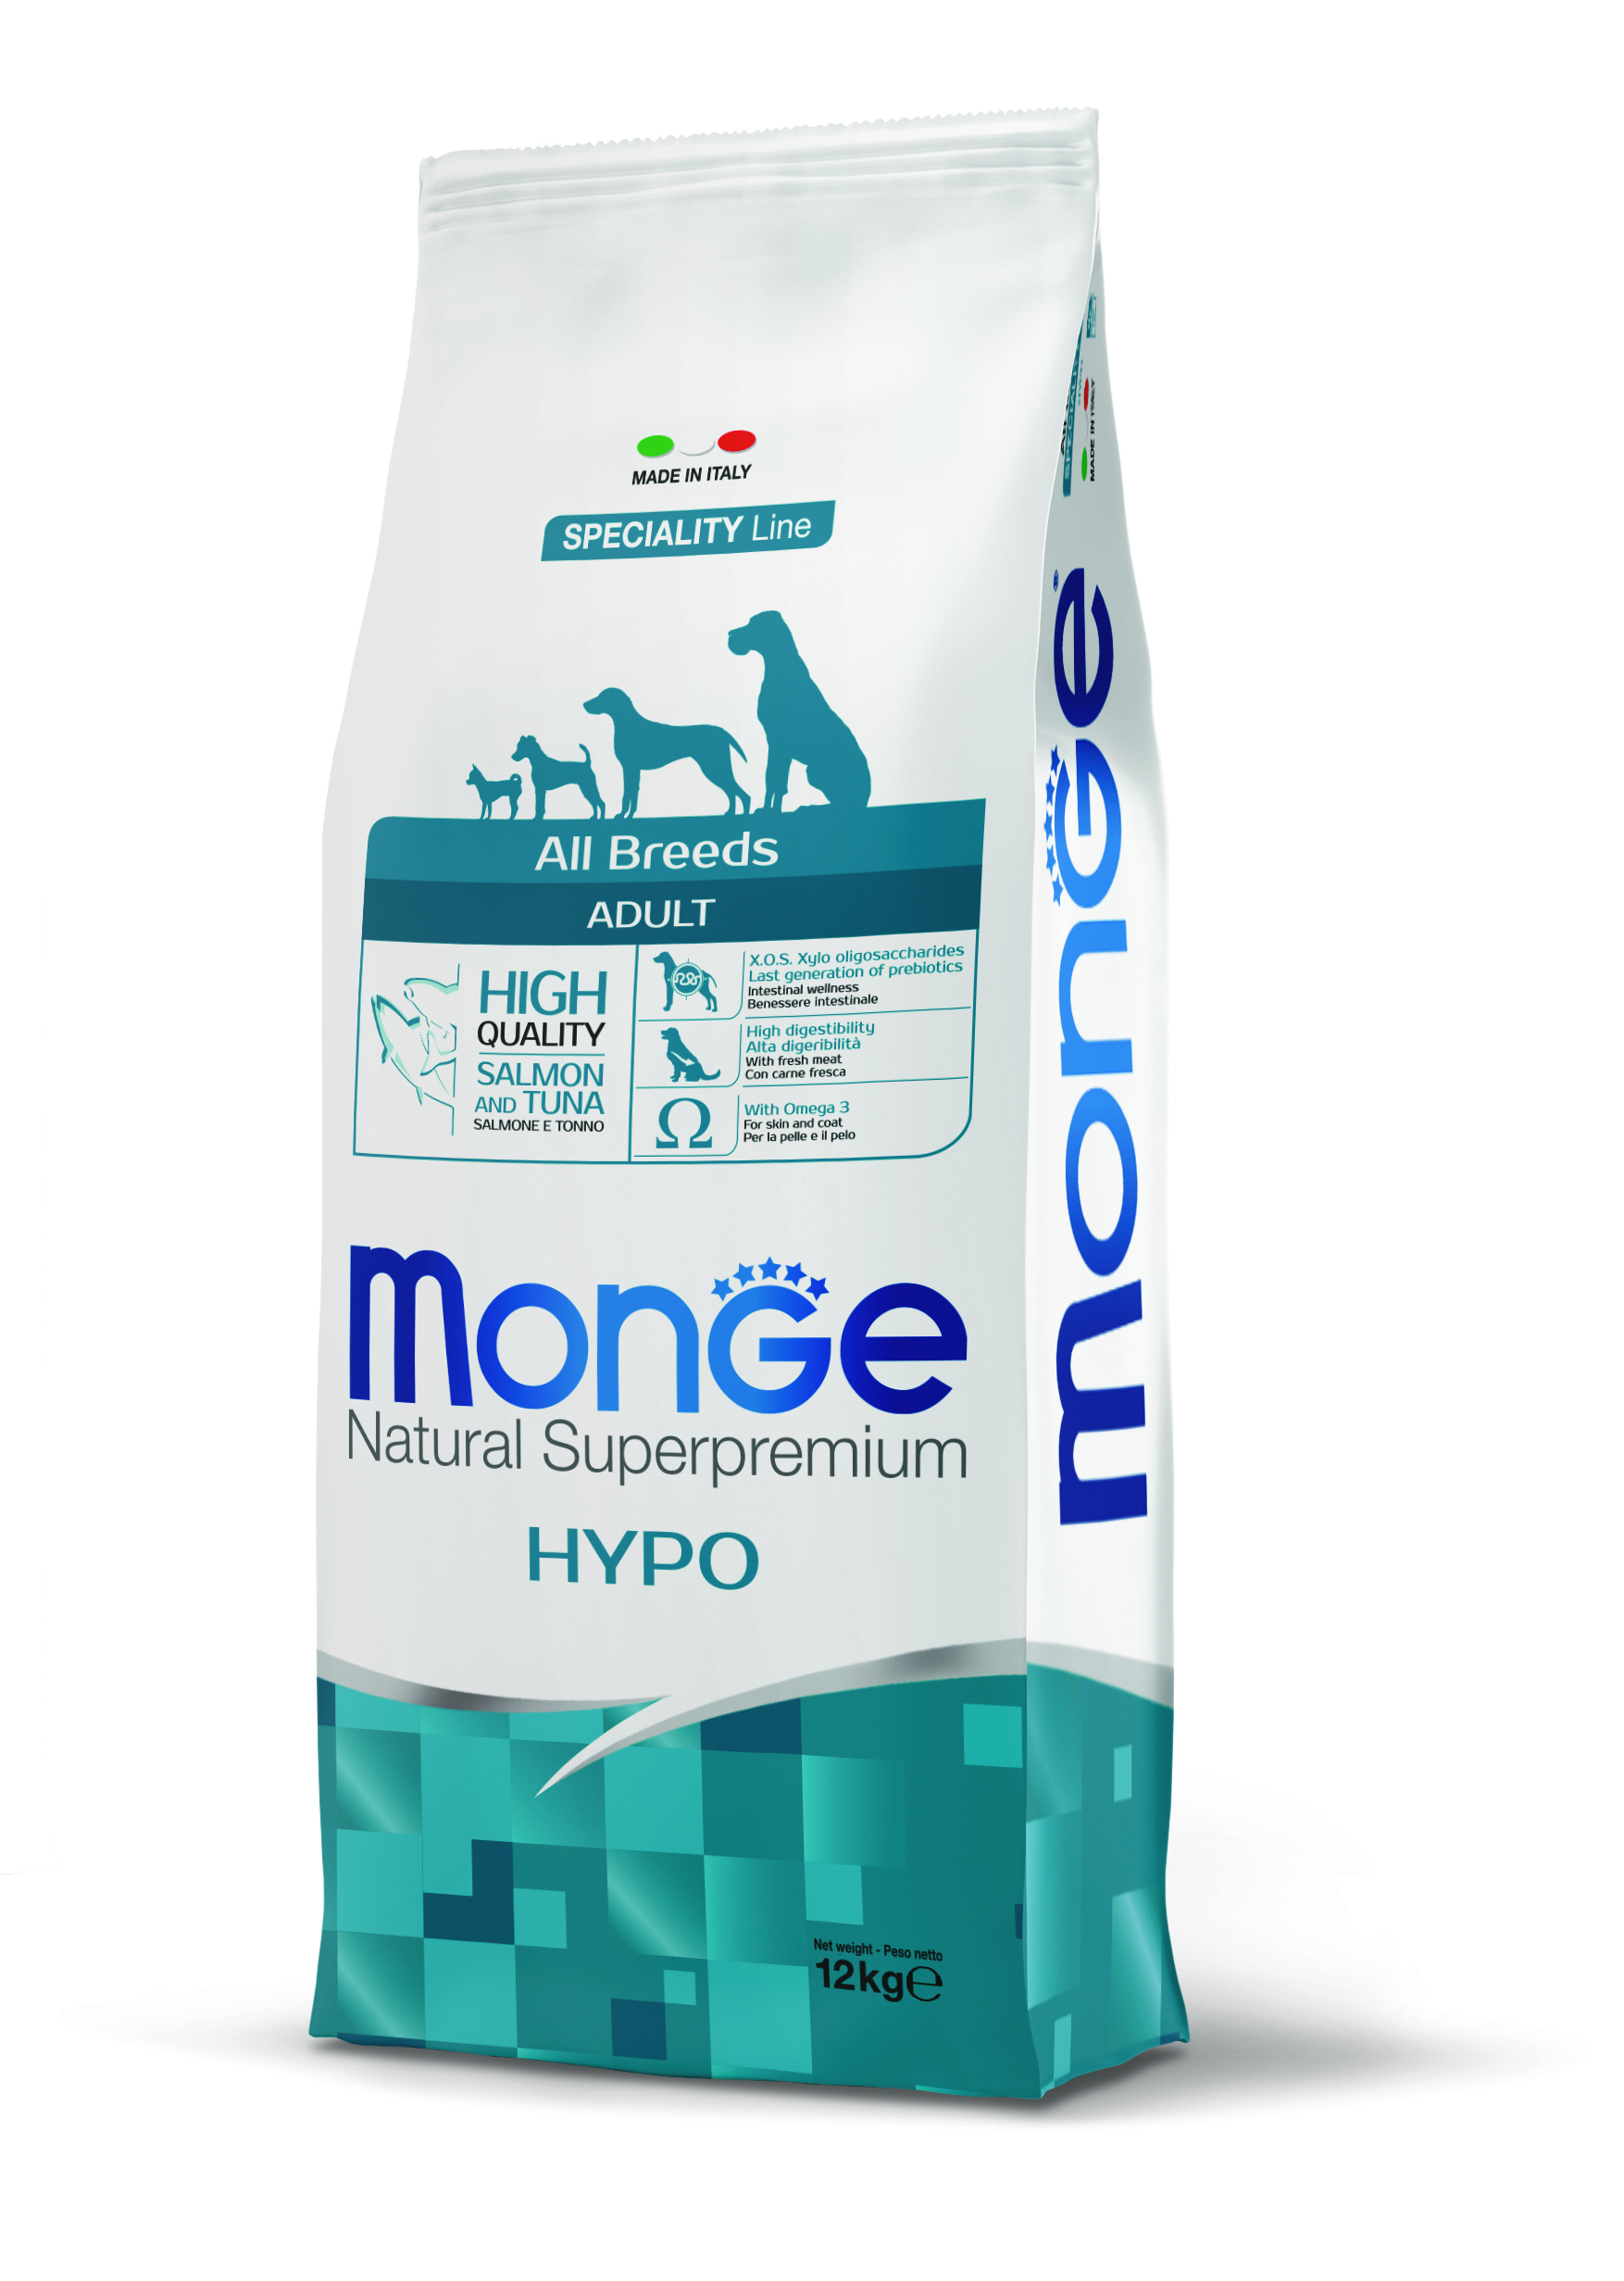 Корм для собак monge dog speciality. Сухой корм для собак Monge Speciality line. Monge корм для собак лосось 12 кг гипоаллергенный. Монж Hypo для собак. Монж корм для собак гипоаллергенный 12 кг.